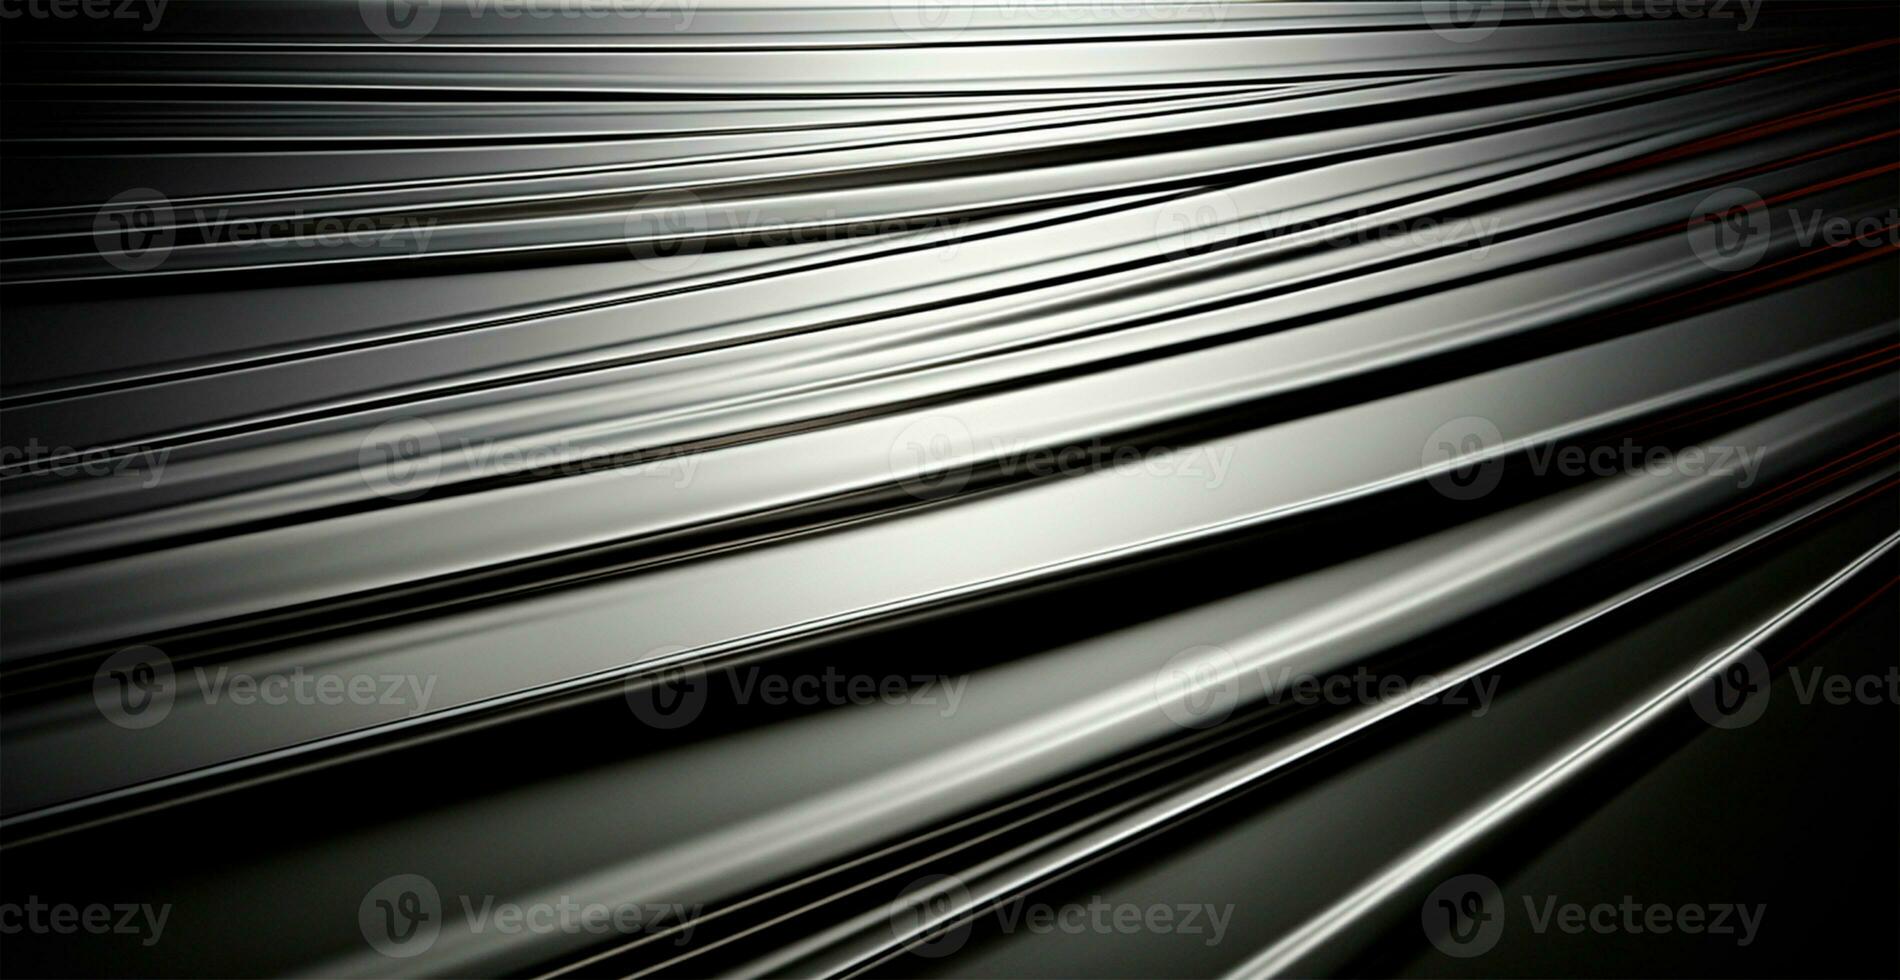 panoramisch metaal textuur, staal zilver achtergrond - ai gegenereerd beeld foto